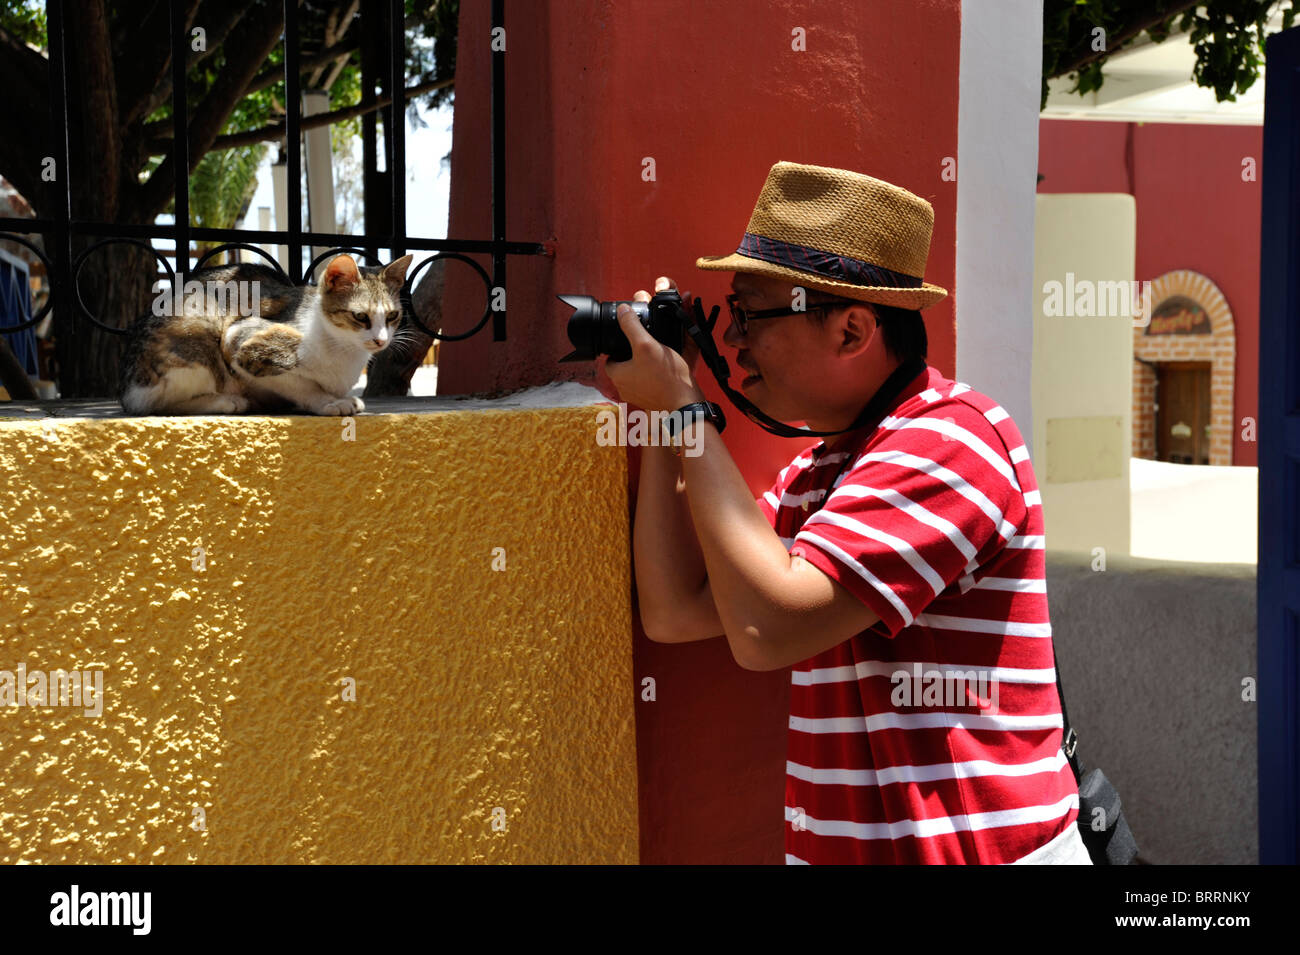 Turista giapponese di fotografare un gatto nella capitale città di Fira sull'isola greca di Santorini nelle Cicladi Foto Stock